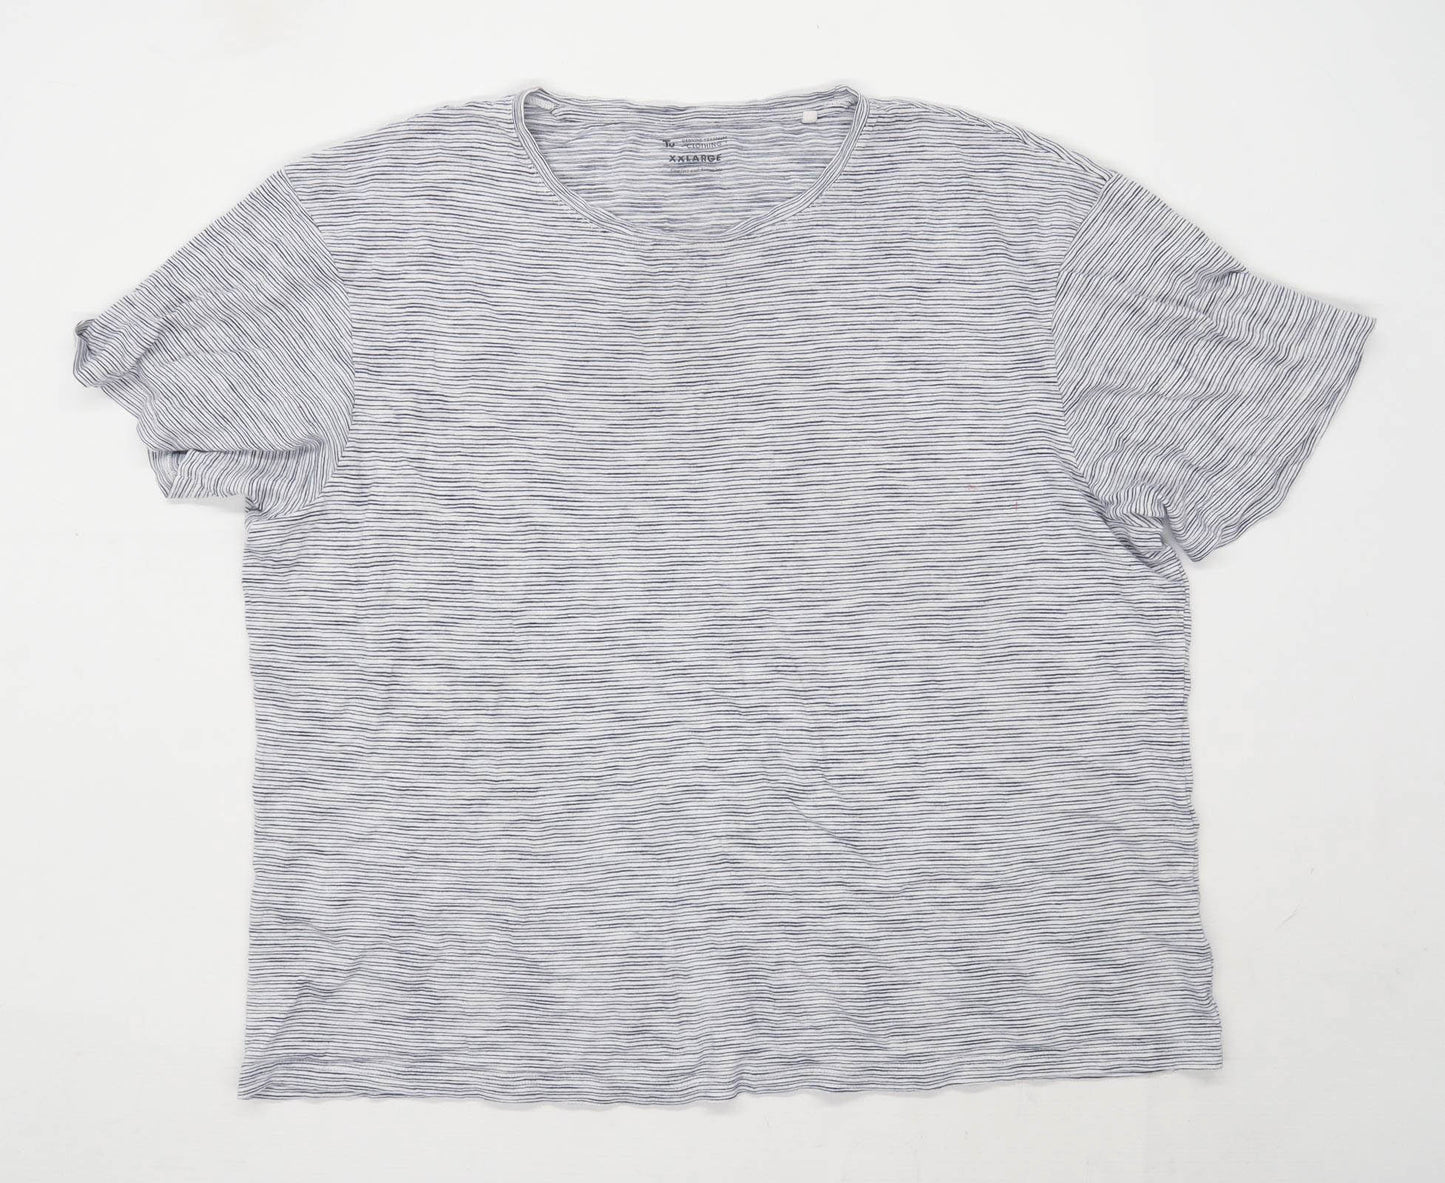 TU Mens Size 2XL Cotton Blend Striped Grey T-Shirt